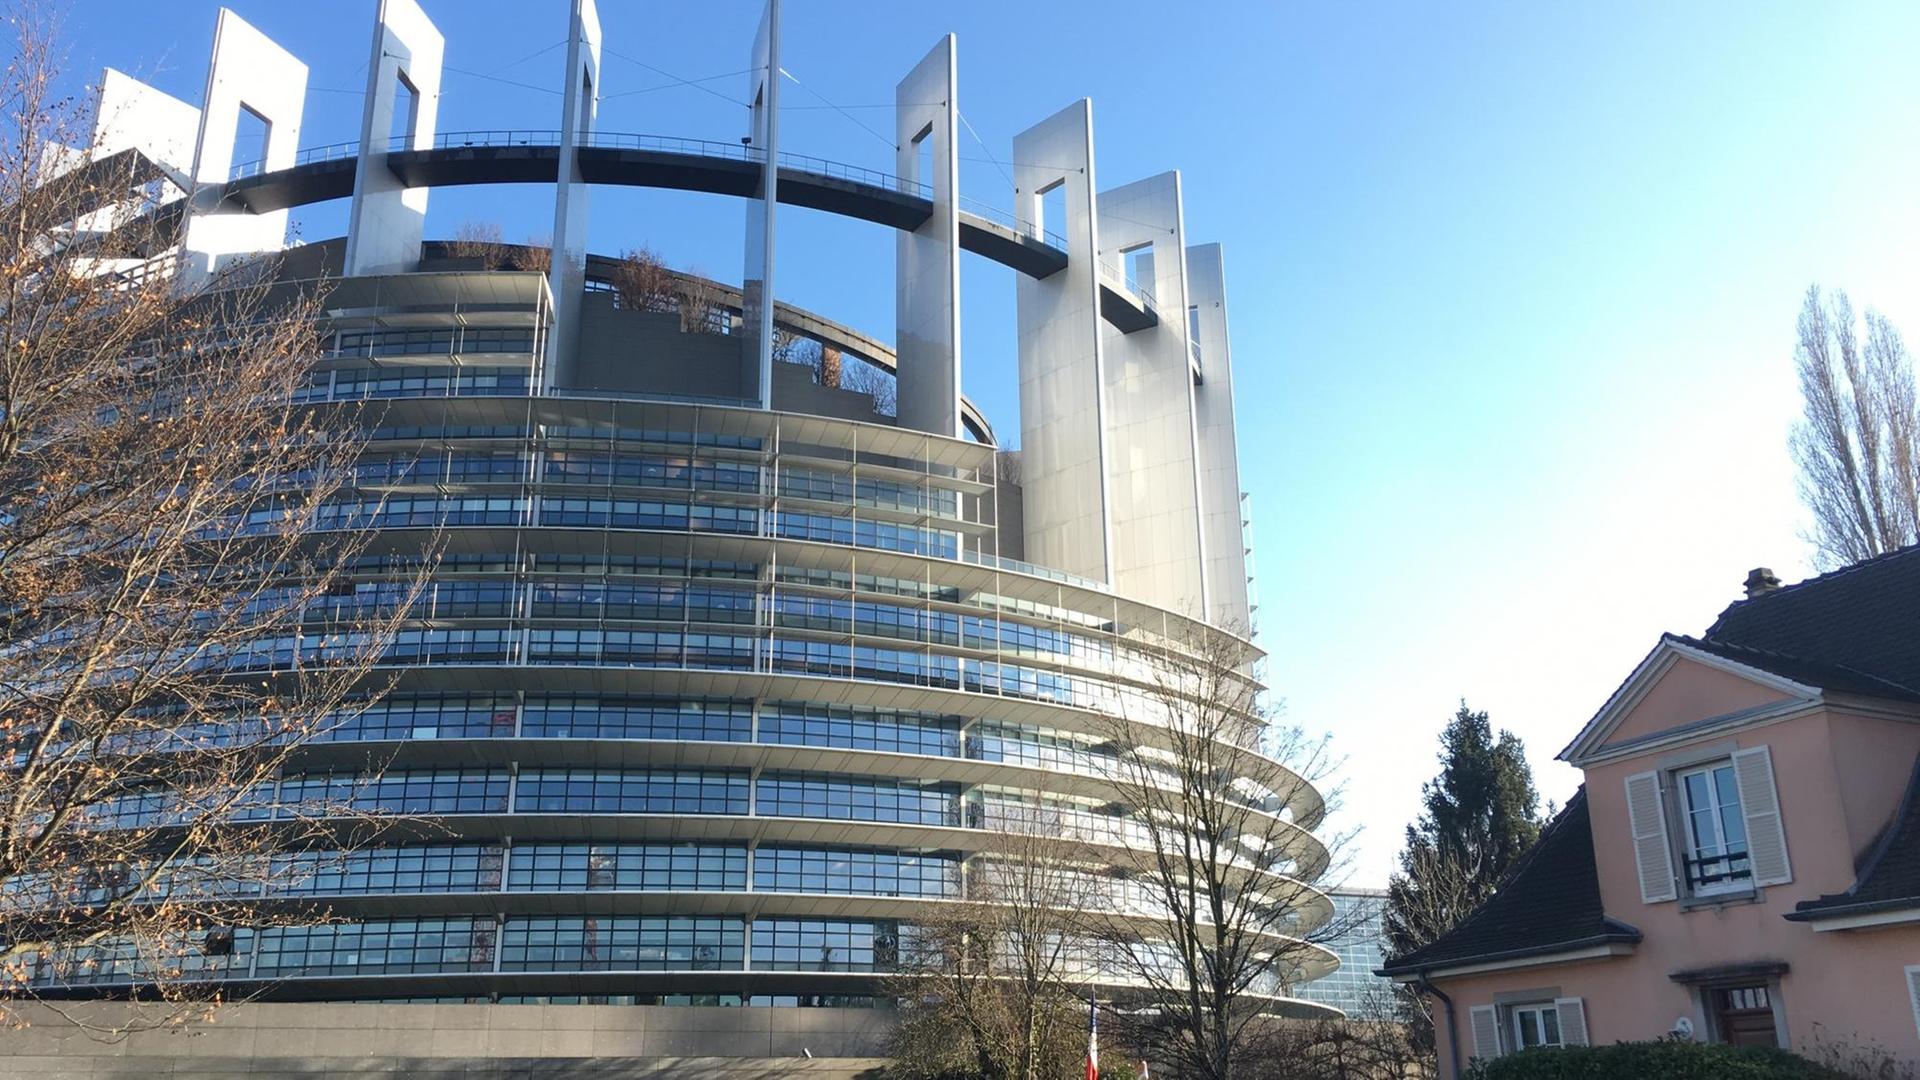 Das Europäische Parlament in Straßburg vor blauem Himmel, rechts daneben ein angrenzendes Wohnhaus.